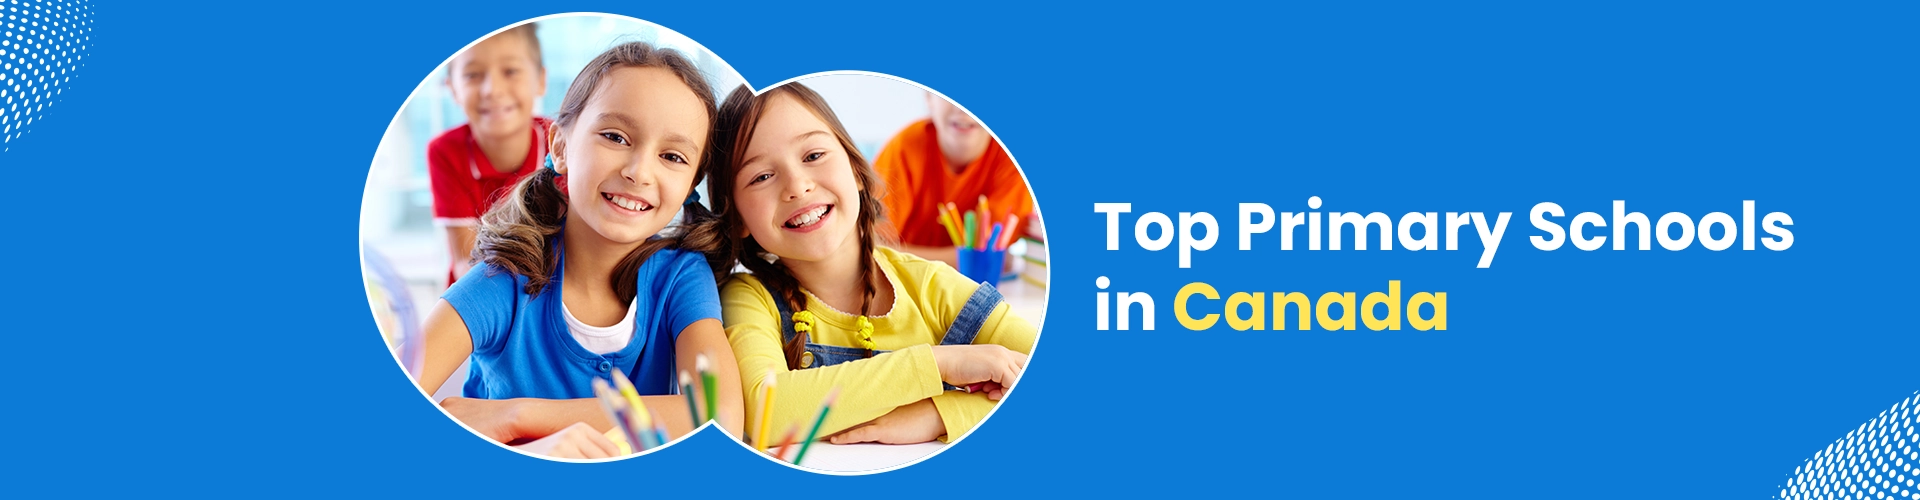 Top 4 Primary Schools in Canada